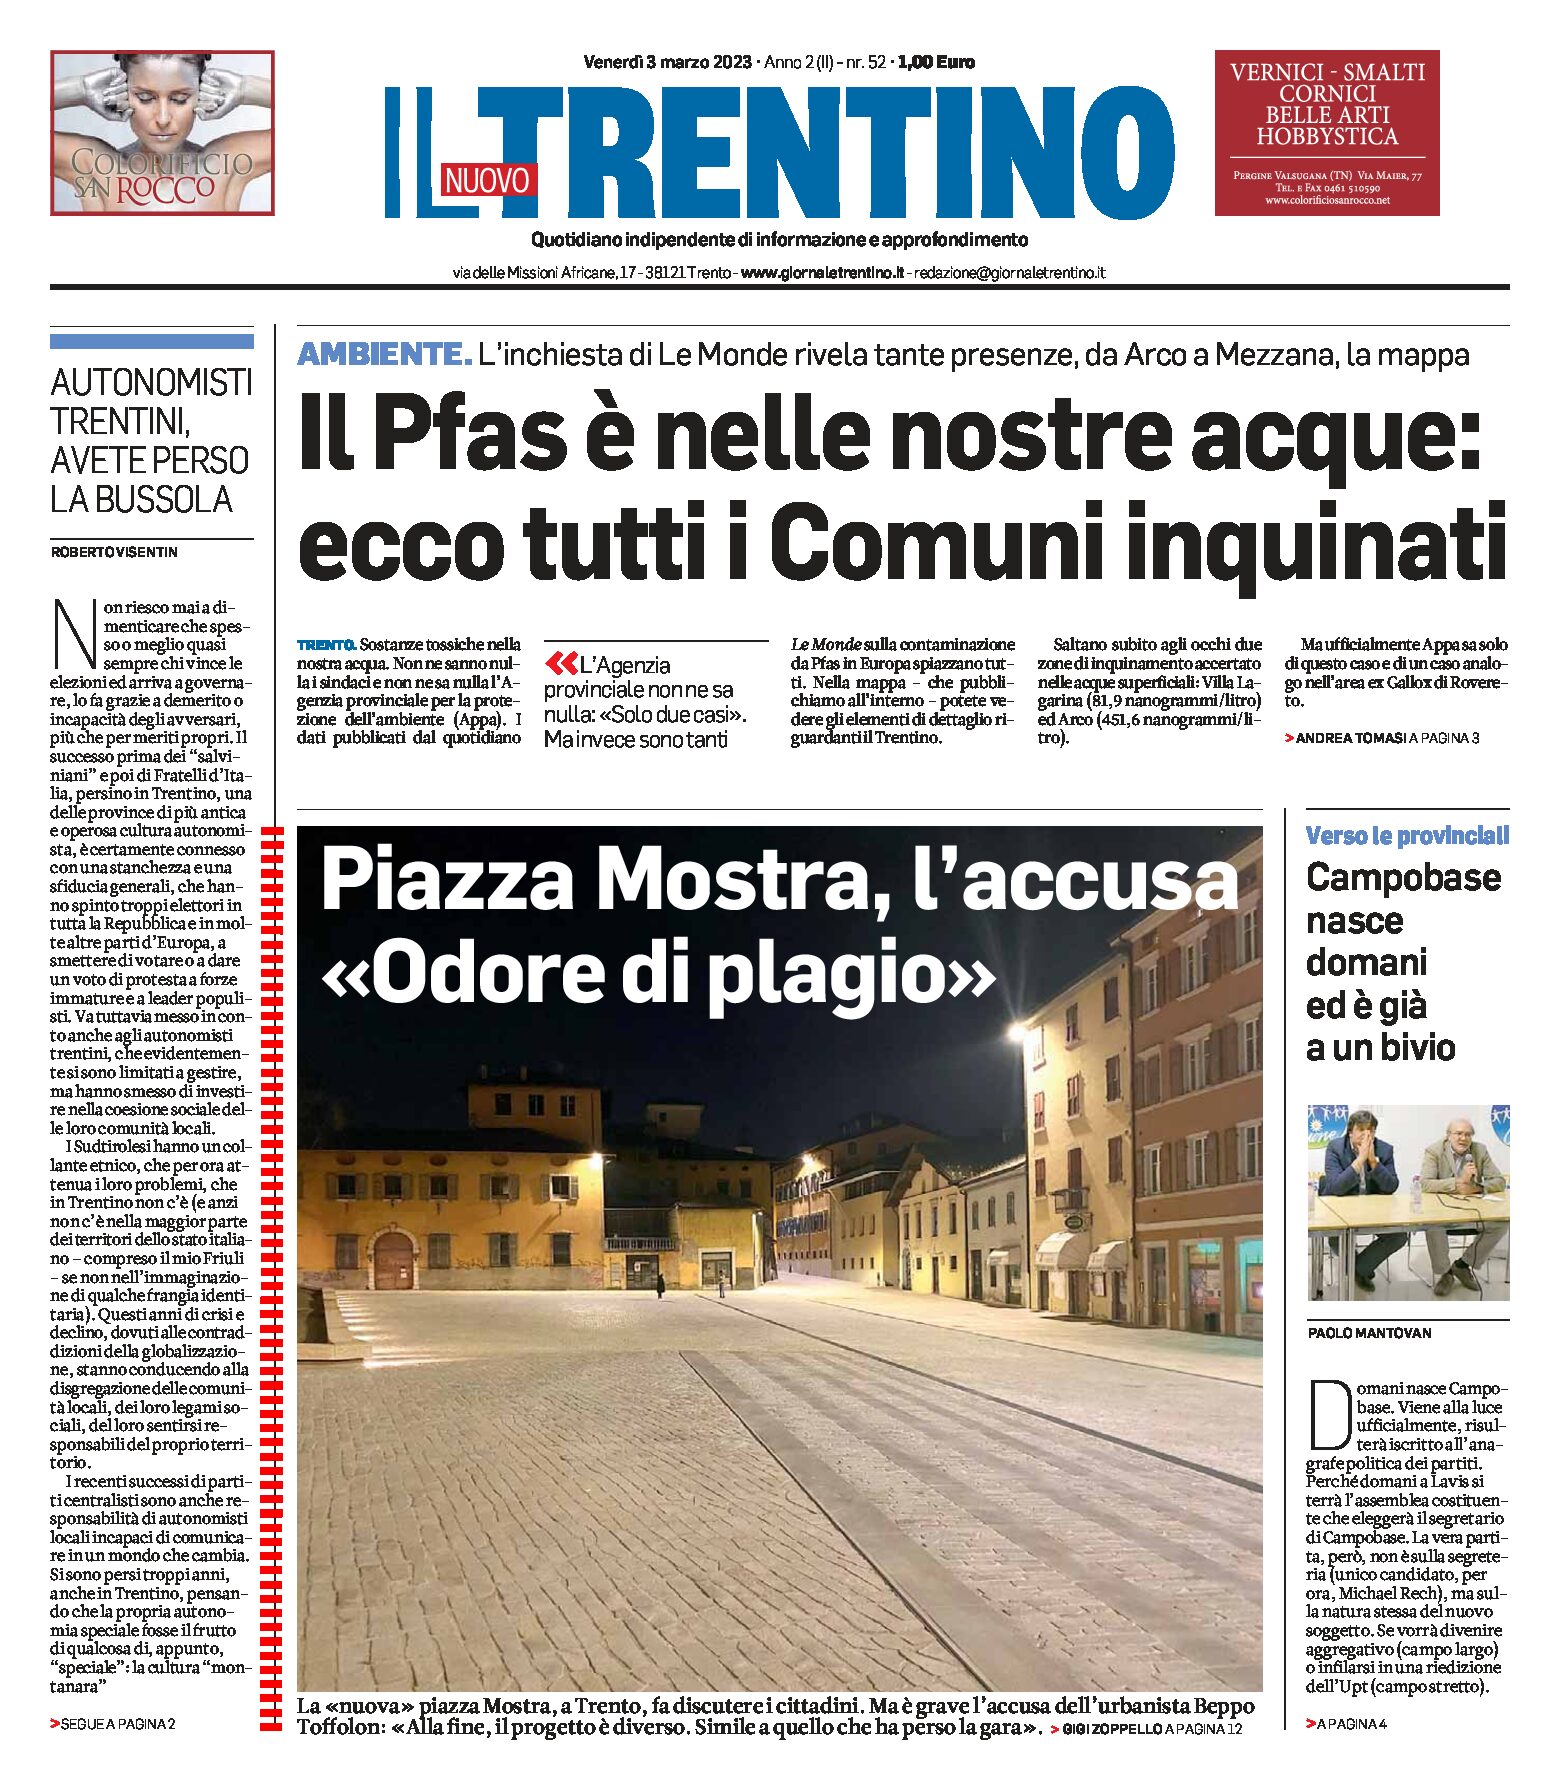 Trento: la nuova piazza Mostra, l’accusa di Toffolon